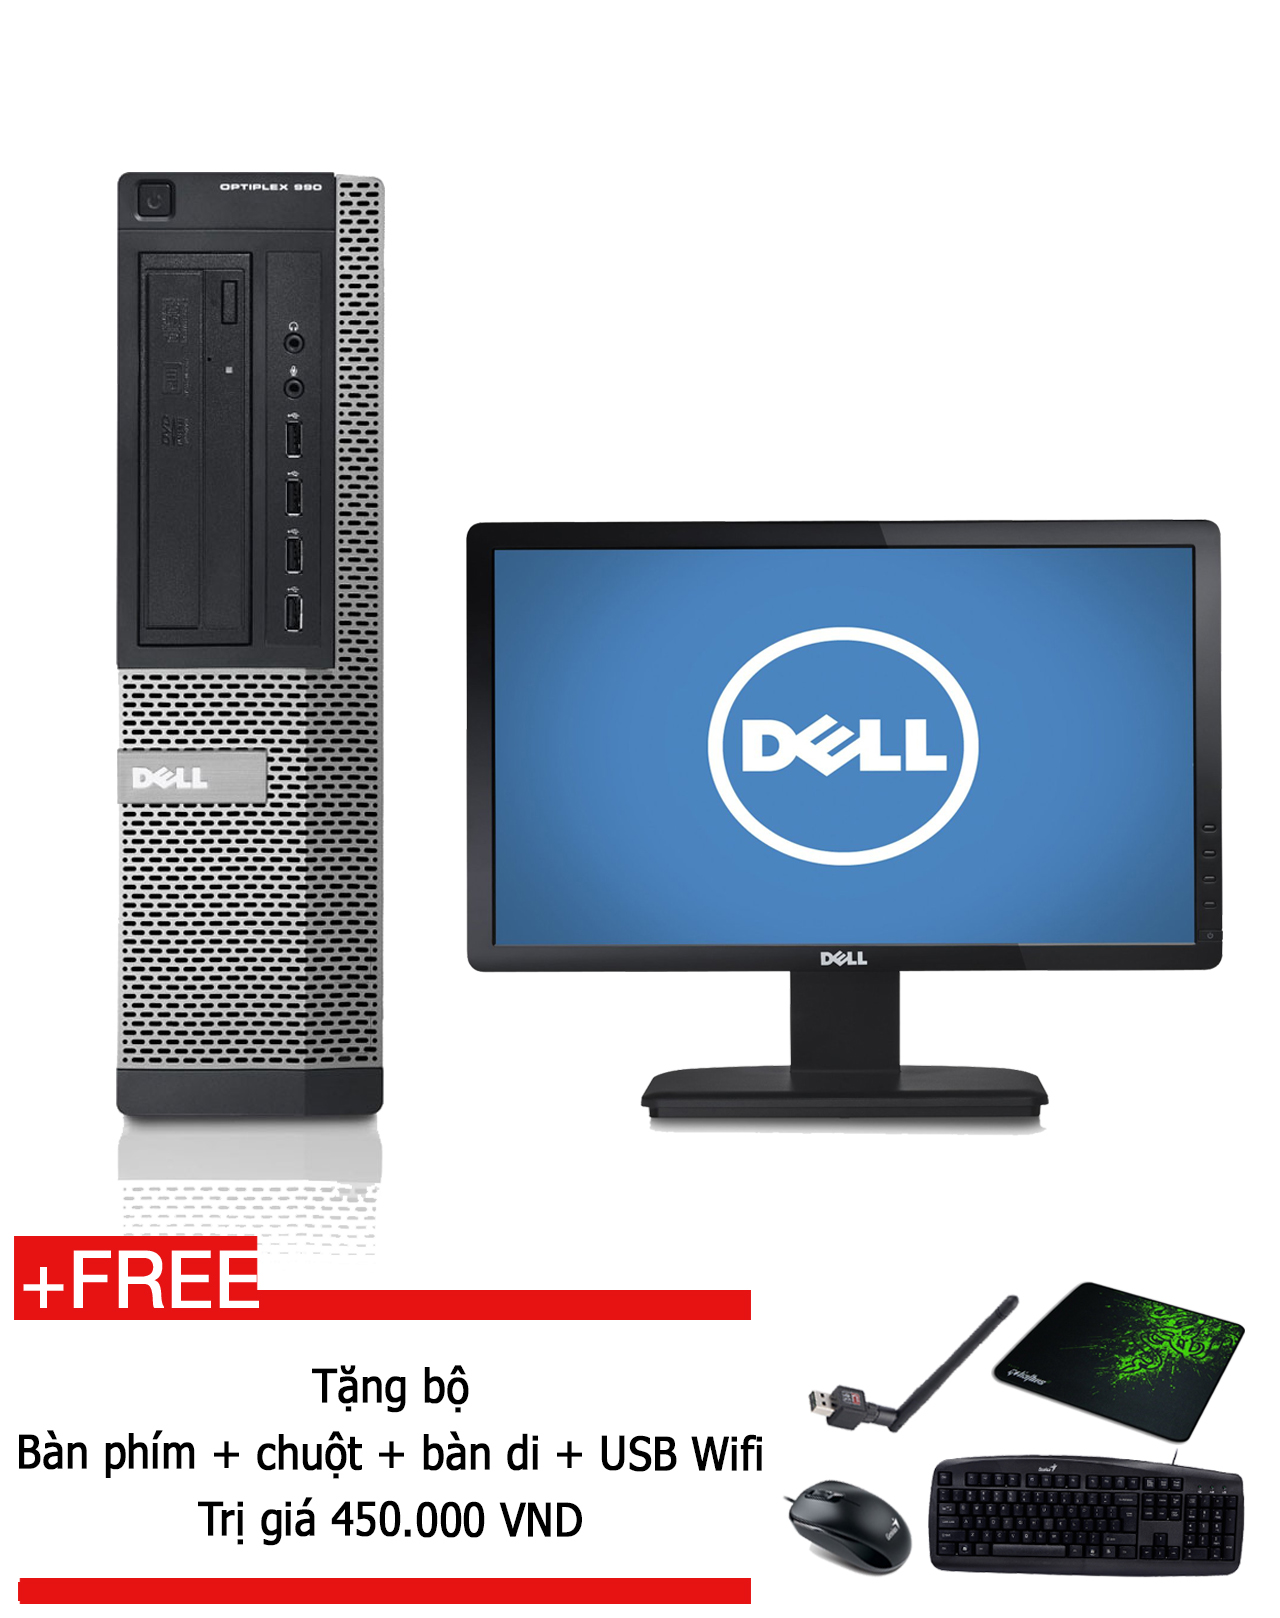 Máy tính đồng bộ Dell Optiplex 990 Intel Core i5 2400, RAM 8GB, HDD 500GB, màn hình 20